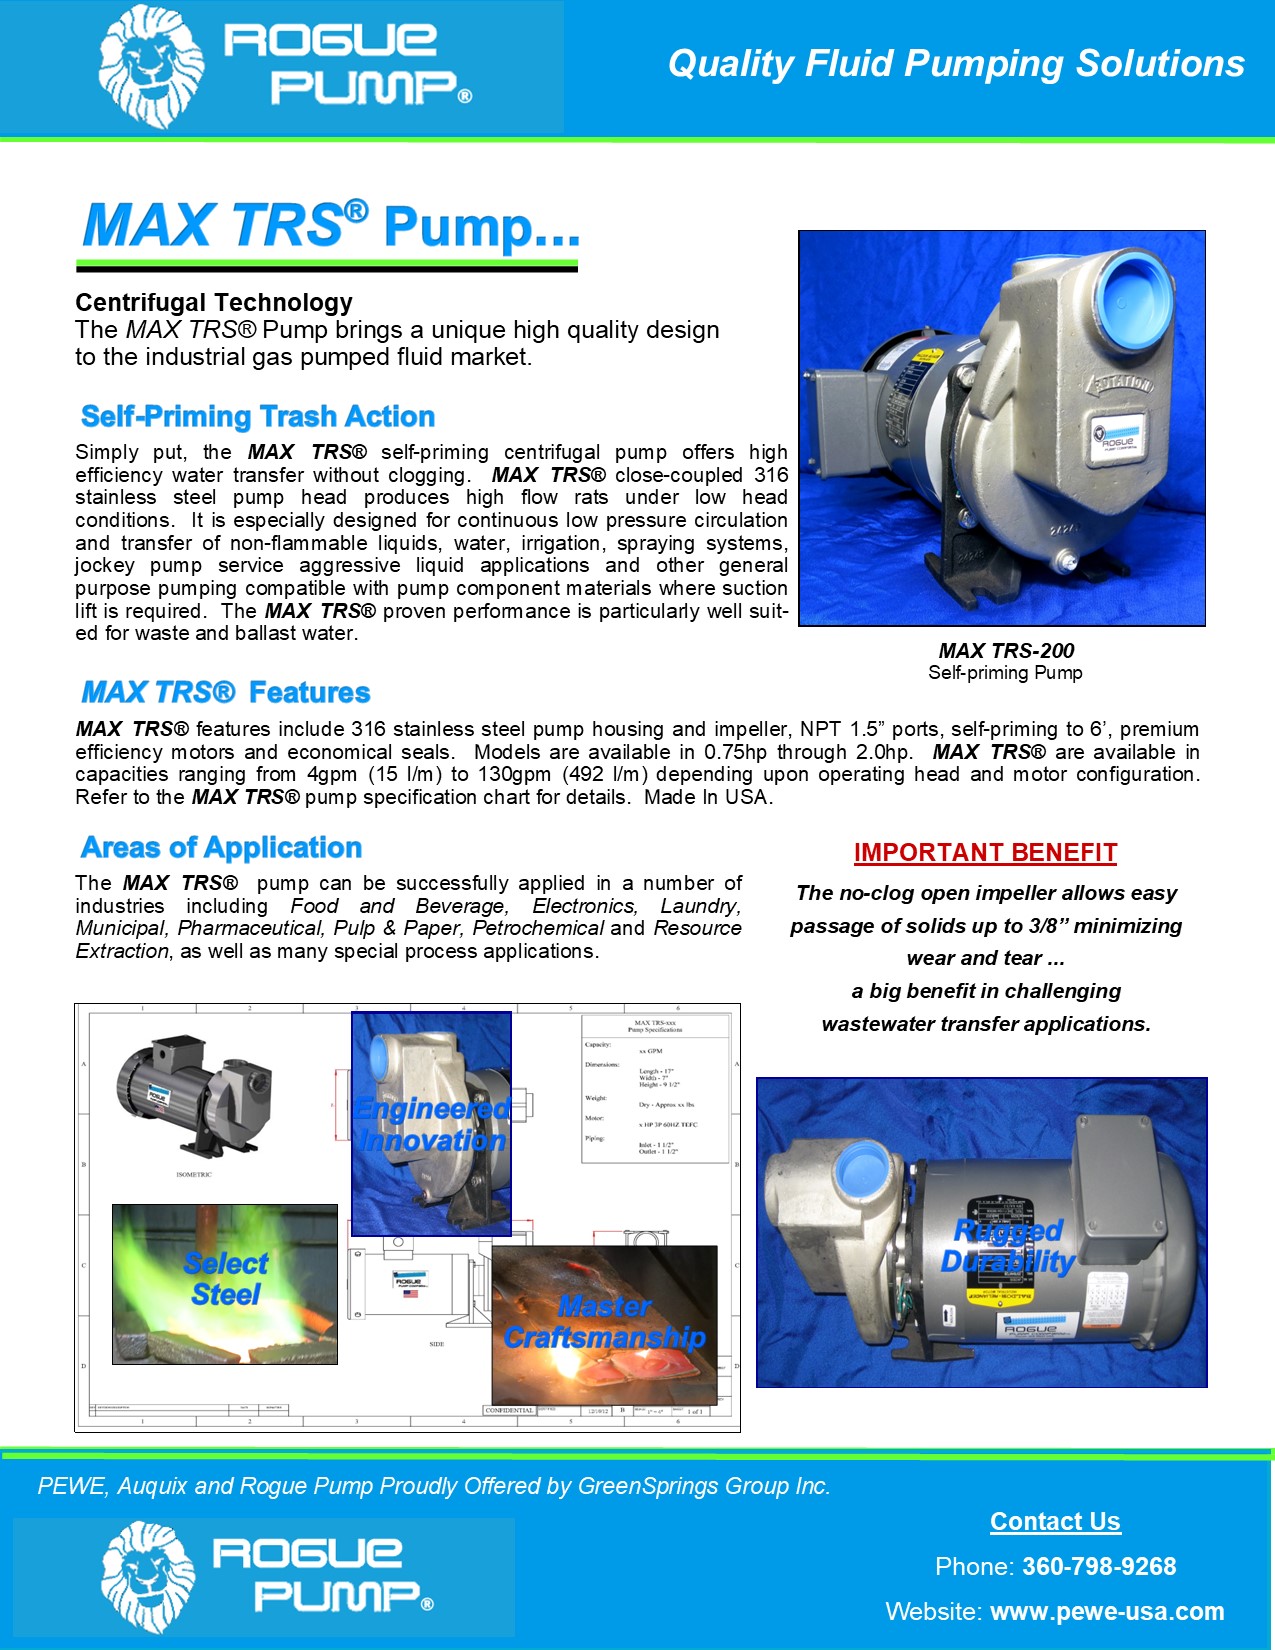 Rogue-Pump-MAX-TRS-Brochure-2021.jpg